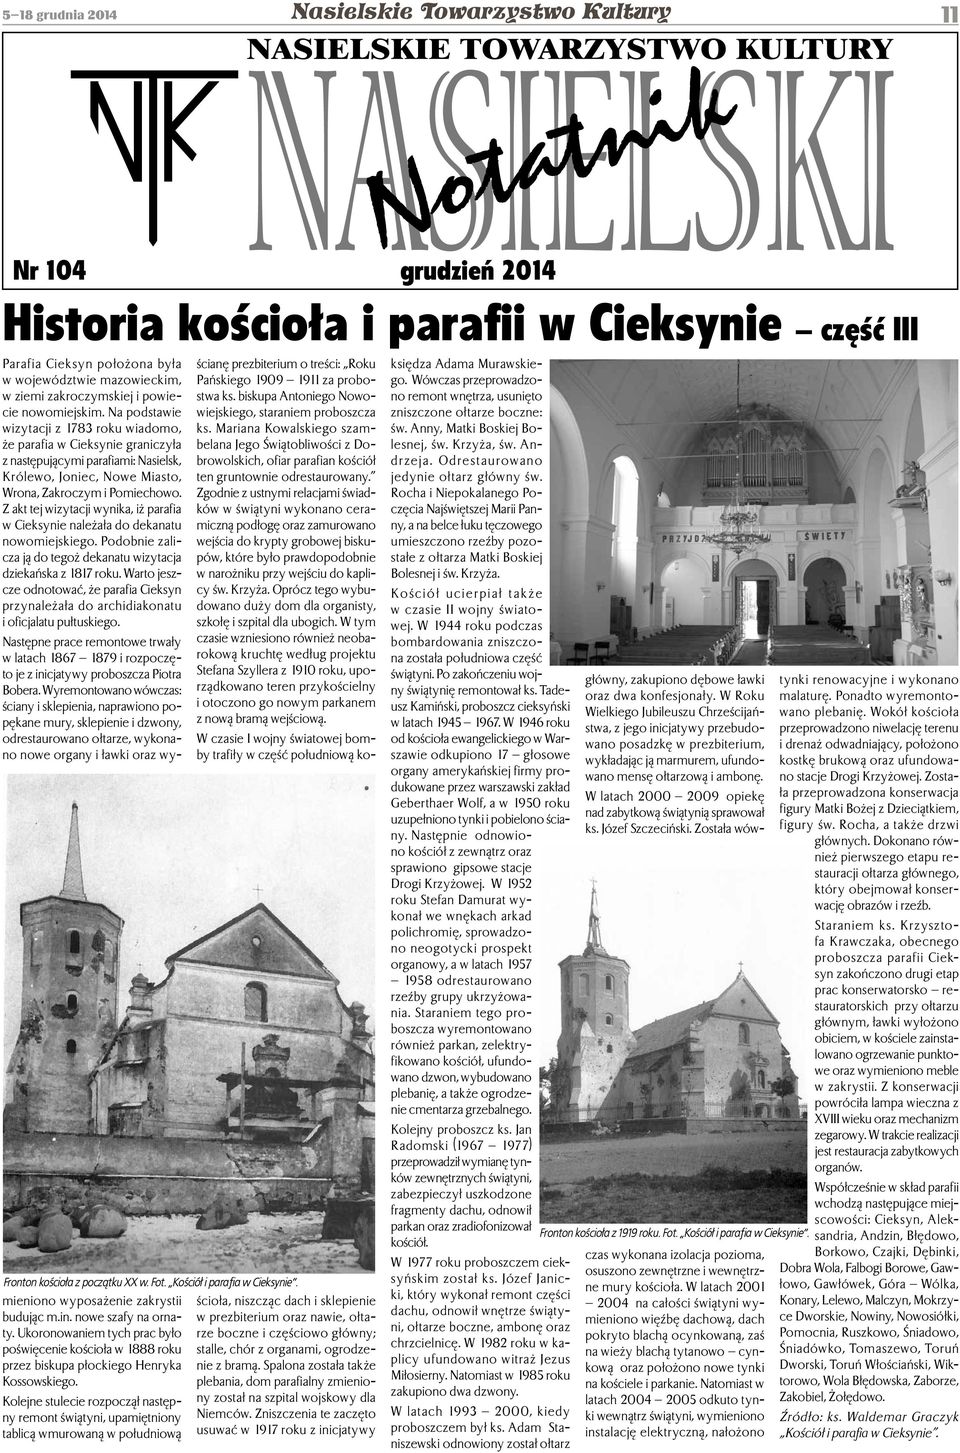 Na podstawie wizytacji z 1783 roku wiadomo, że parafia w Cieksynie graniczyła z następującymi parafiami: Nasielsk, Królewo, Joniec, Nowe Miasto, Wrona, Zakroczym i Pomiechowo.